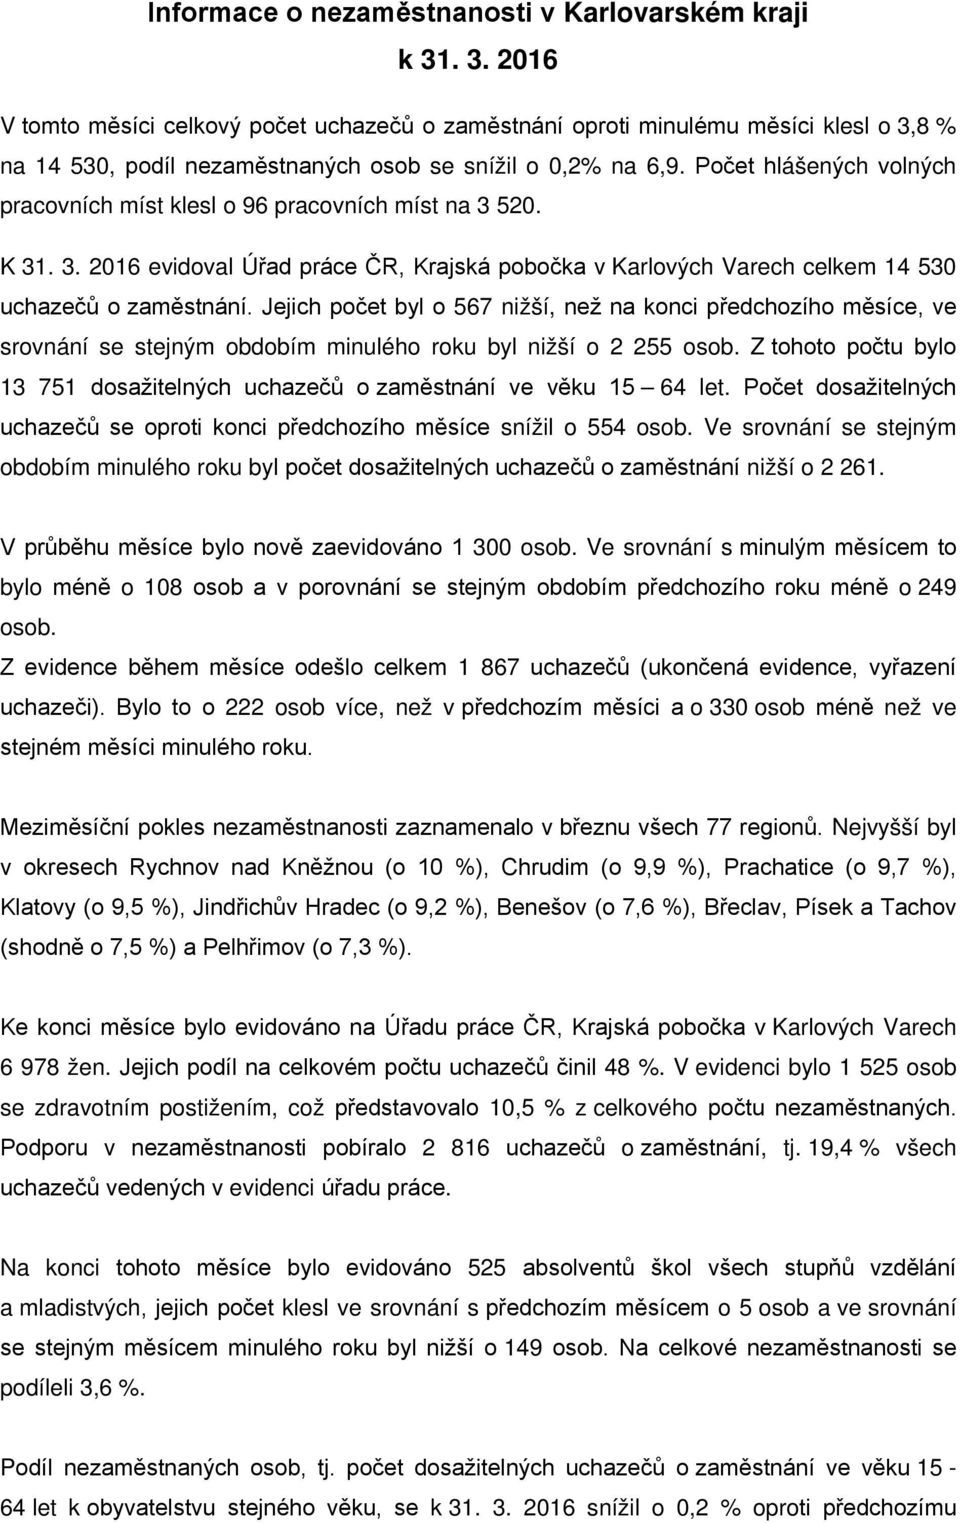 Počet hlášených volných pracovních míst klesl o 96 pracovních míst na 3 520. K 31. 3. 2016 evidoval Úřad práce ČR, Krajská pobočka v Karlových Varech celkem 14 530 uchazečů o zaměstnání.